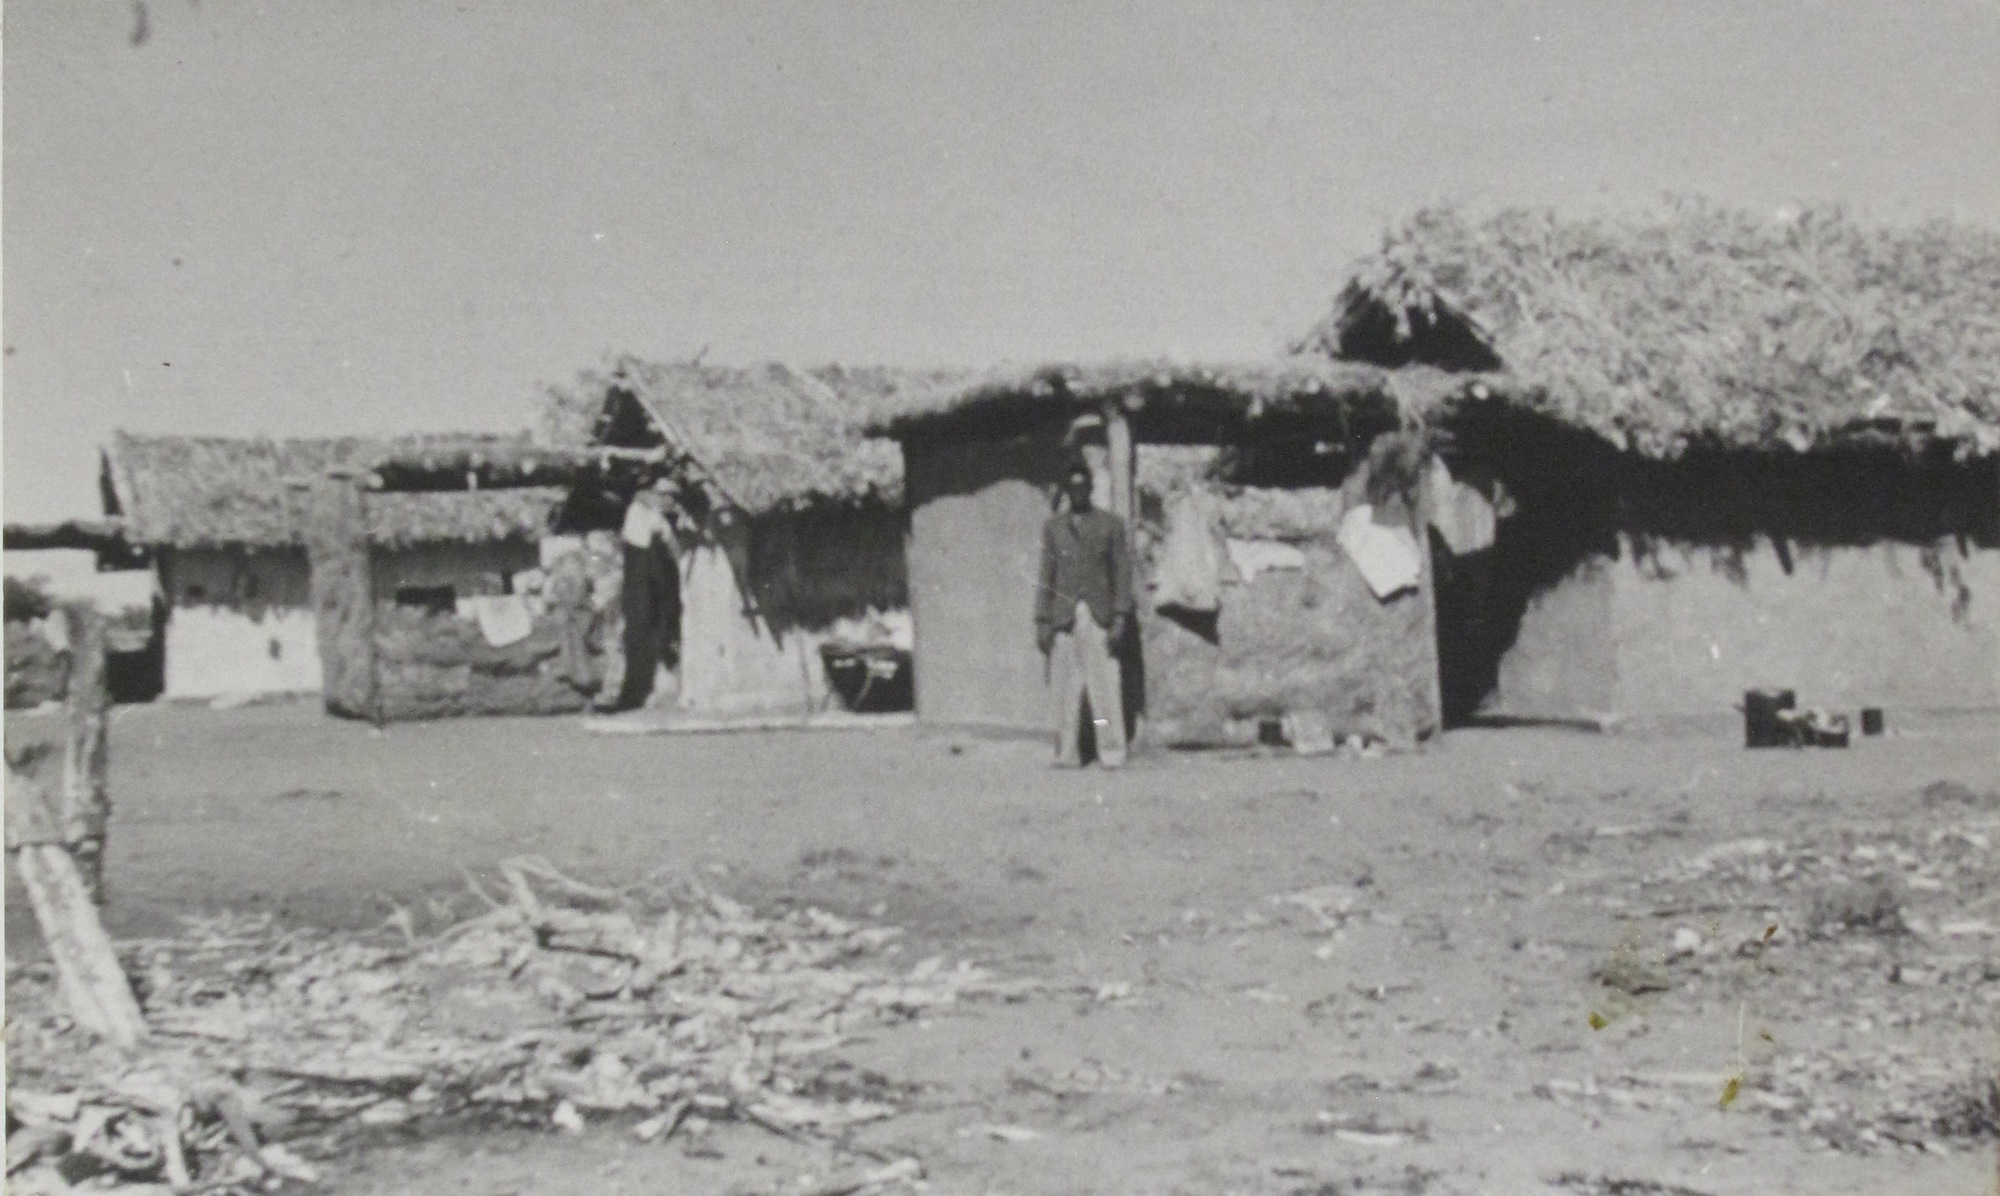 Adobe cottages at Yandeyarra 1953